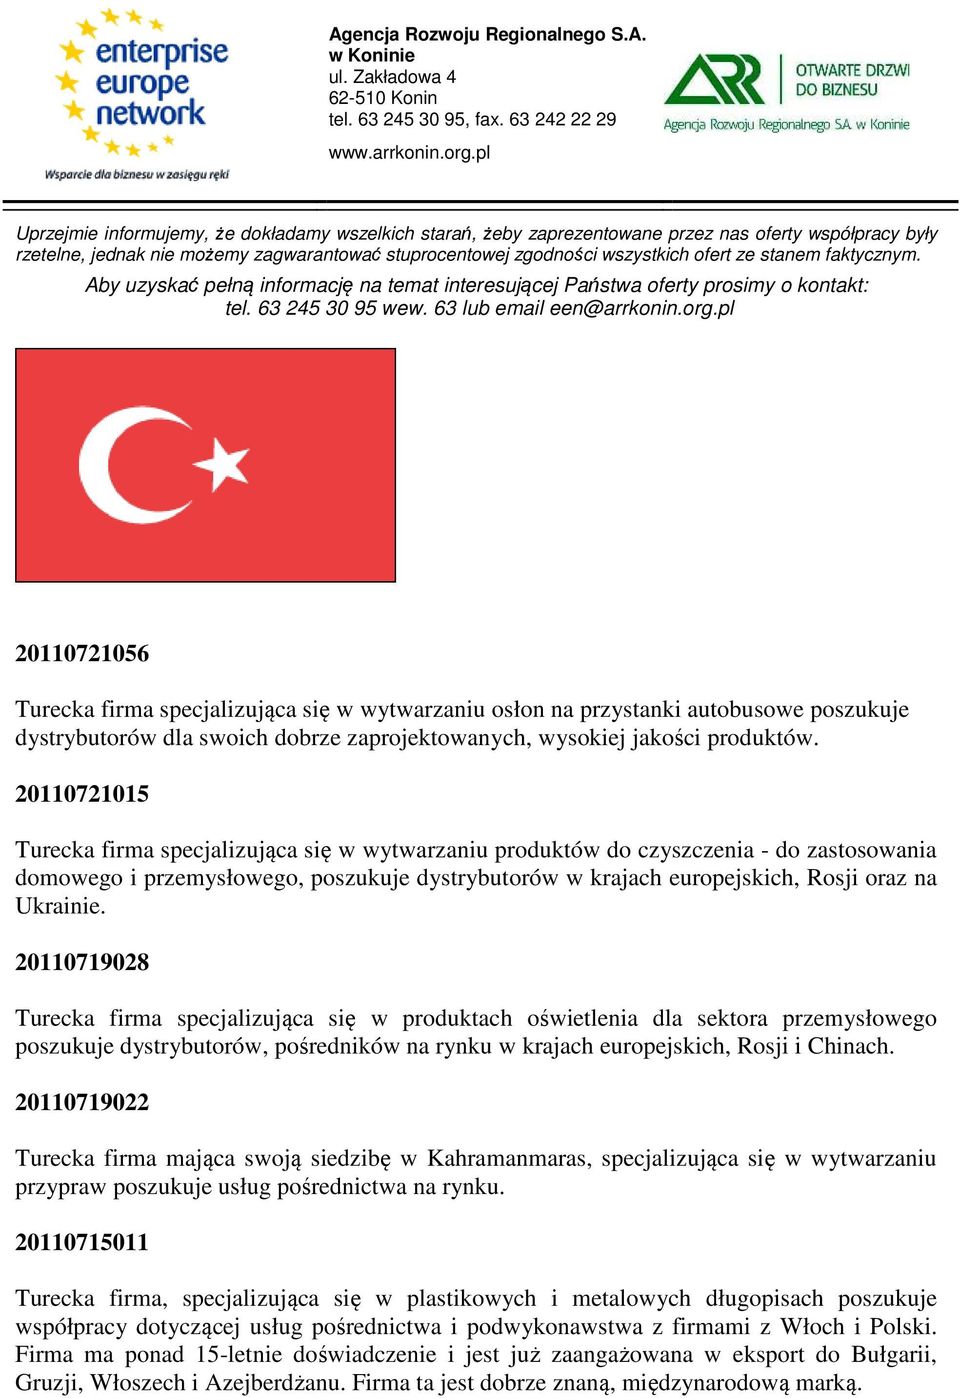 20110719028 Turecka firma specjalizująca się w produktach oświetlenia dla sektora przemysłowego poszukuje dystrybutorów, pośredników na rynku w krajach europejskich, Rosji i Chinach.